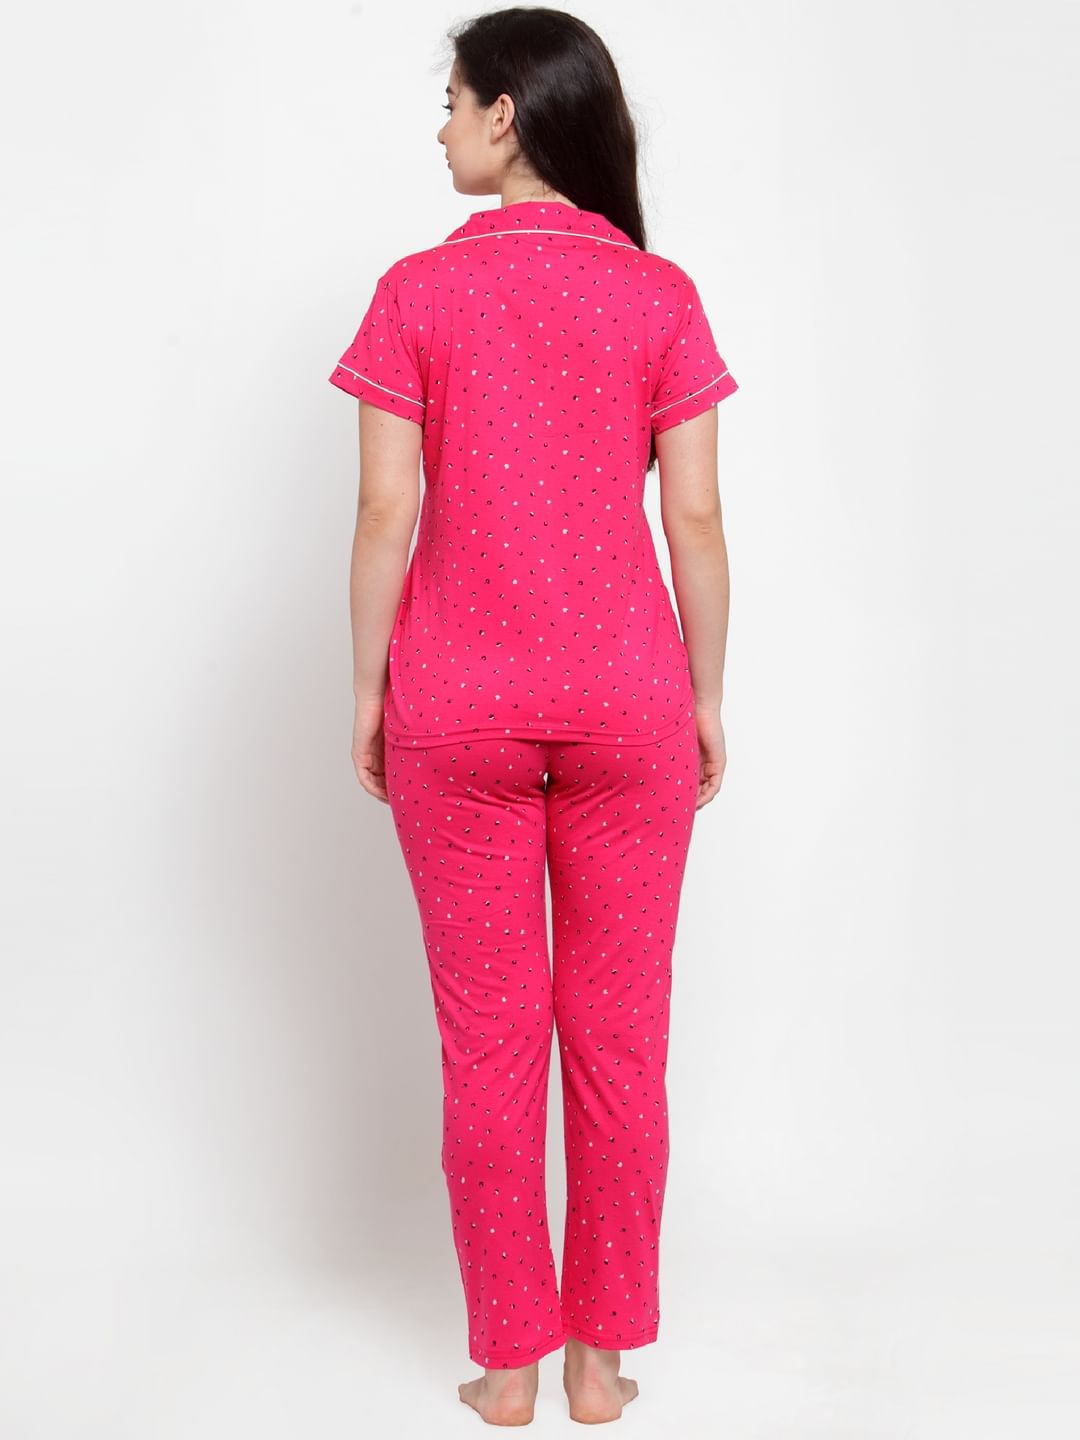 Secret Wish Women's Pink Cotton Printed Nightsuit 